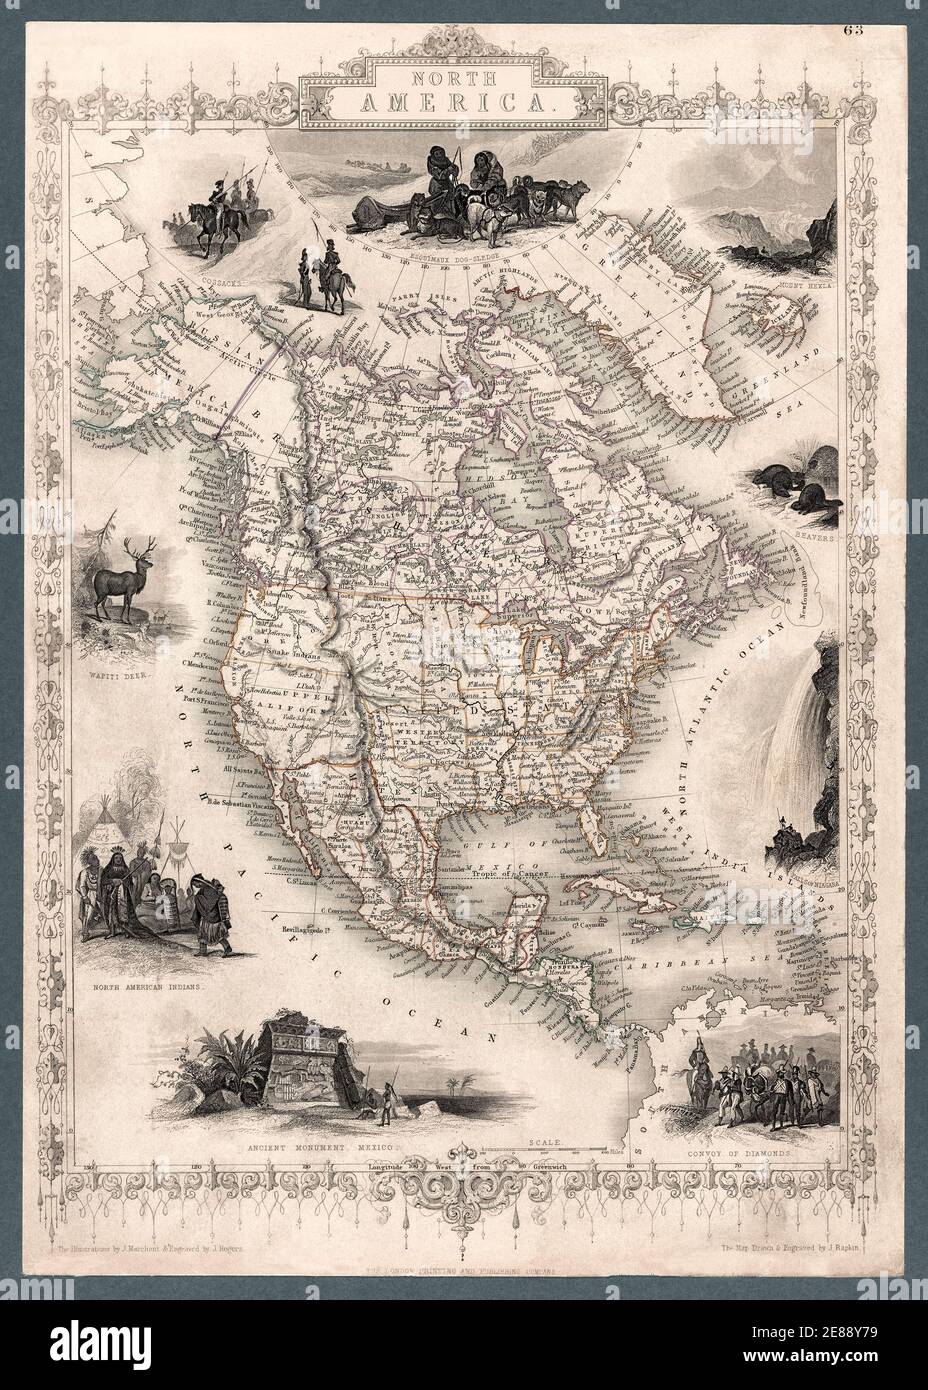 Nordamerika Karte 1851 mit Abbildungen und Grenzen. Atlas-Karte von Nordamerika einschließlich der Vereinigten Staaten, Mexiko, Mittelamerika, karibischen Inseln, einschließlich detaillierter Grenzen, Ortsnamen und Illustrationen. Die Karte erscheint bemerkenswert genau für das Datum, als sie zum ersten Mal erstellt wurde, 1851. Dies ist eine verbesserte, restaurierte Reproduktion einer antiken Karte. Stockfoto